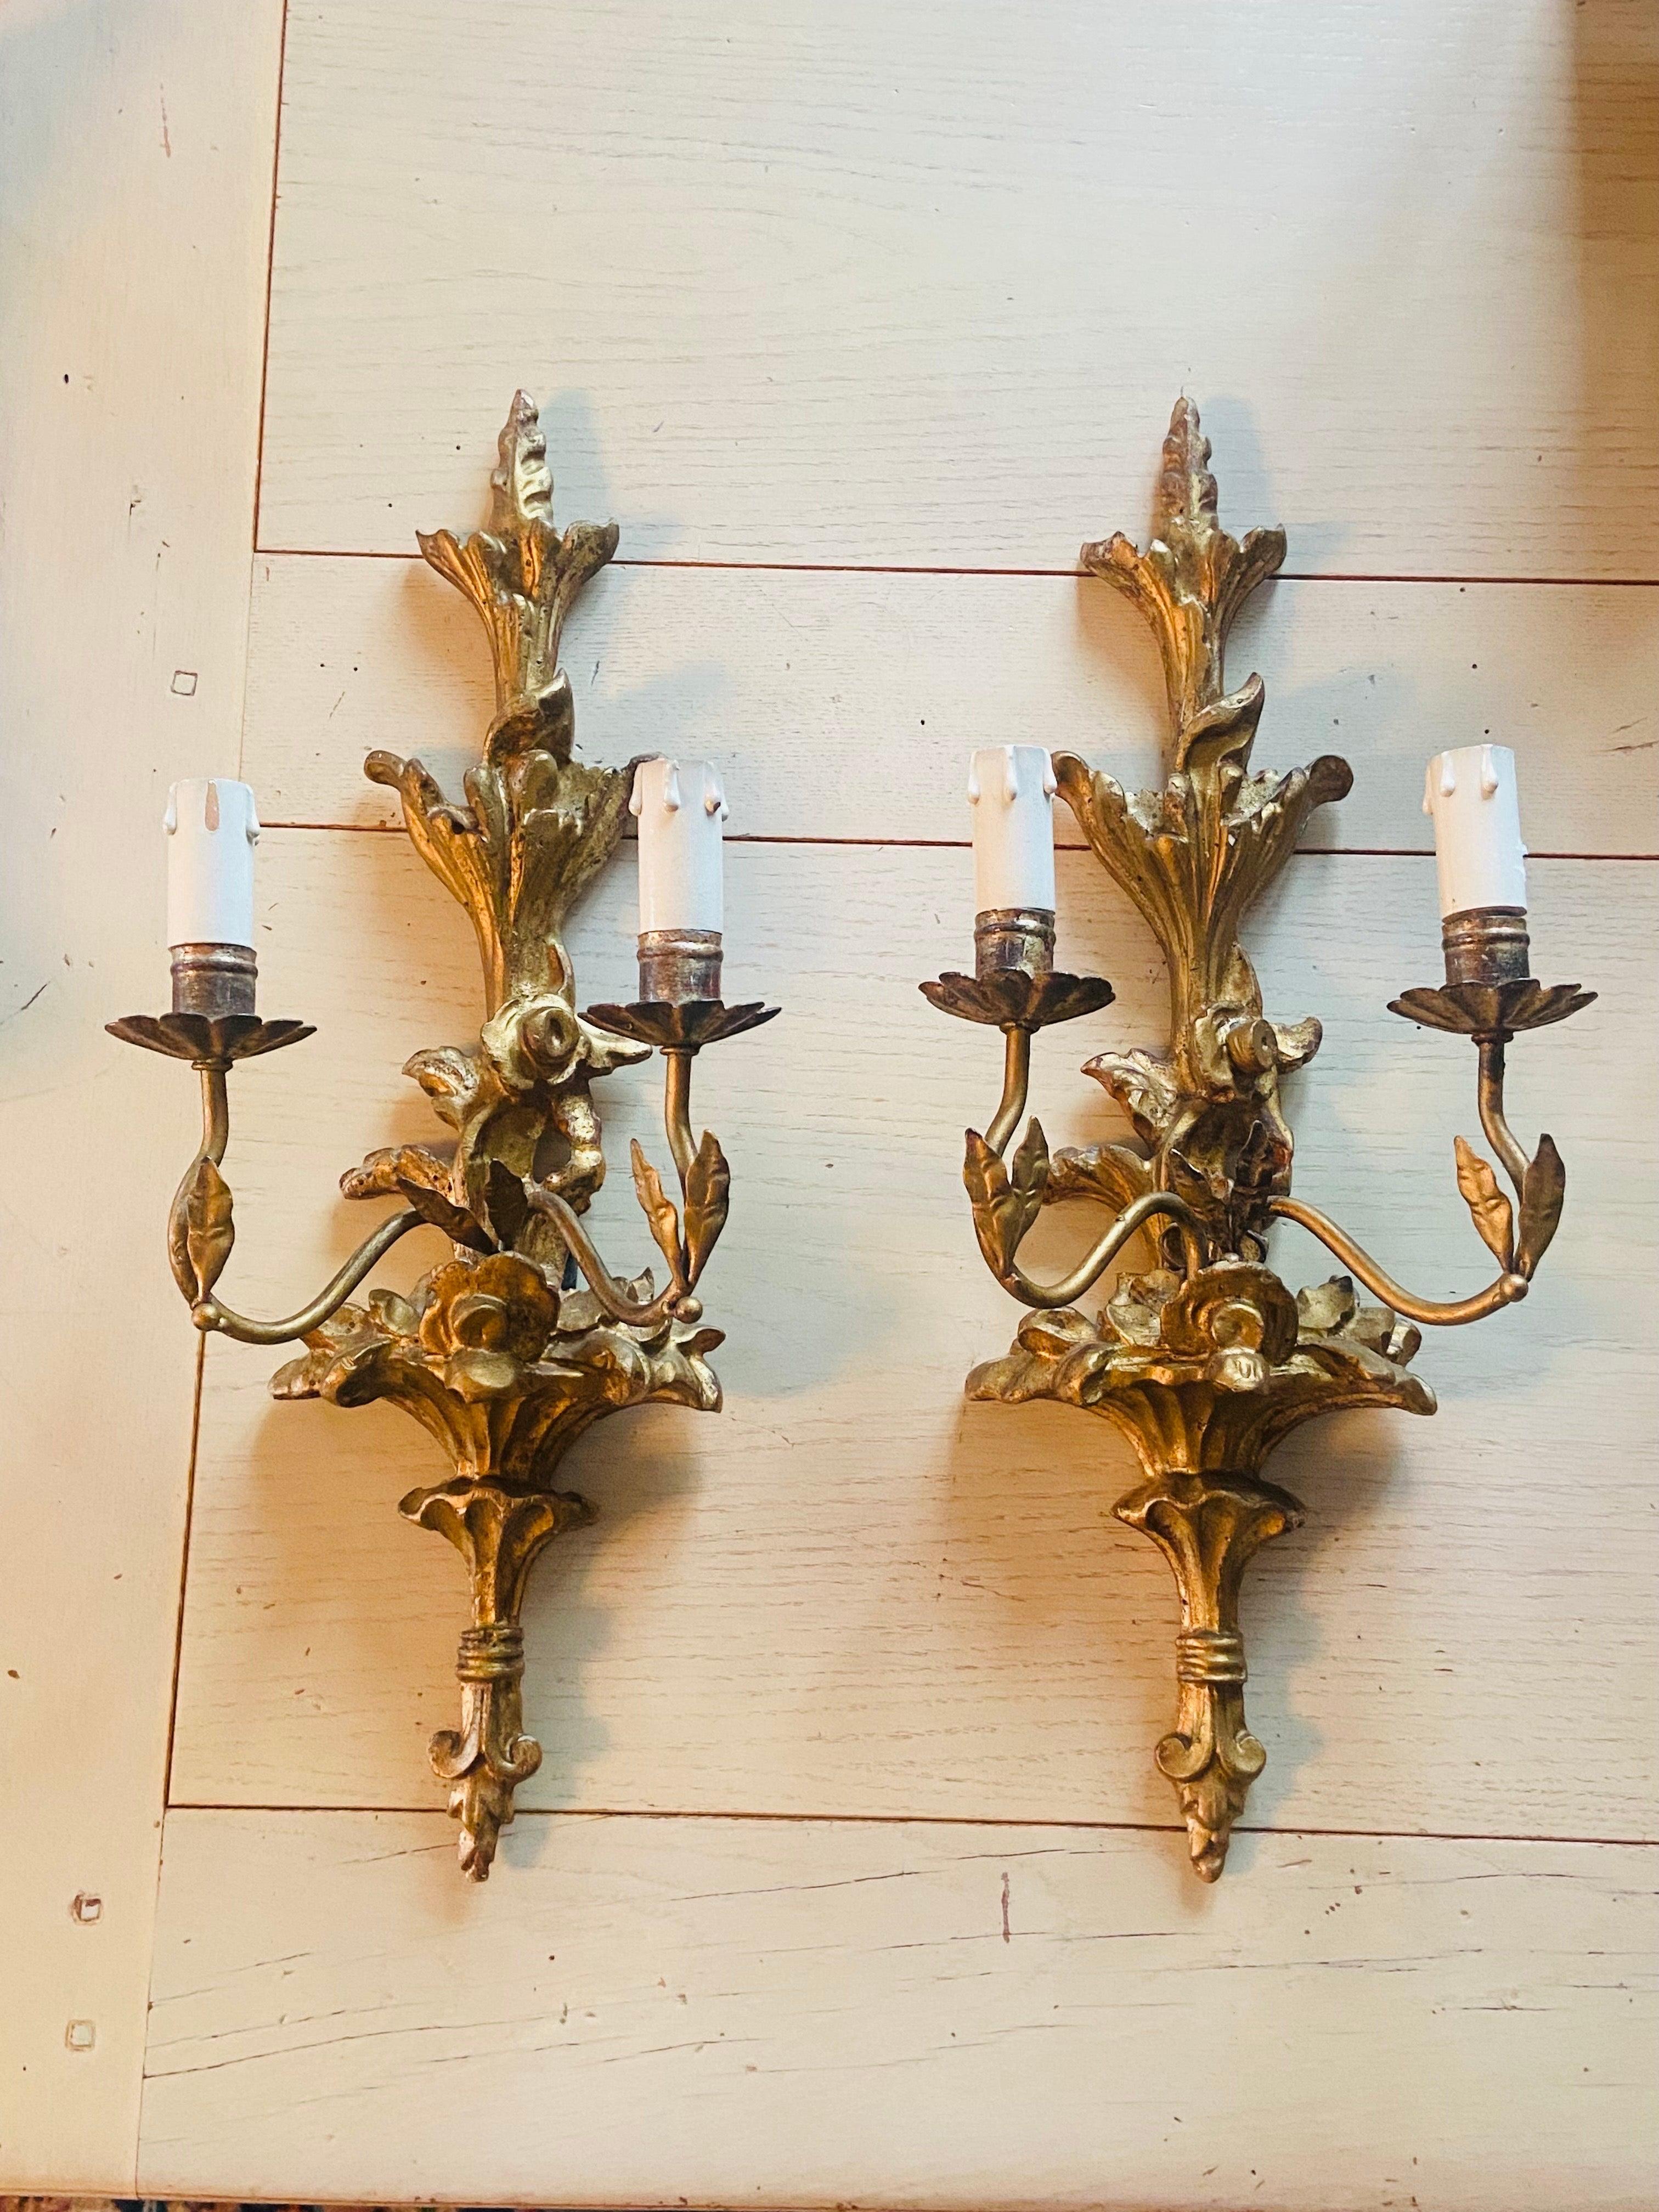 Cette ancienne applique française de style Louis XVI, sculptée à la main et en bois doré, est réglée et câblée pour deux ampoules chacune. État authentique sans aucune restauration.
France, vers 1880.